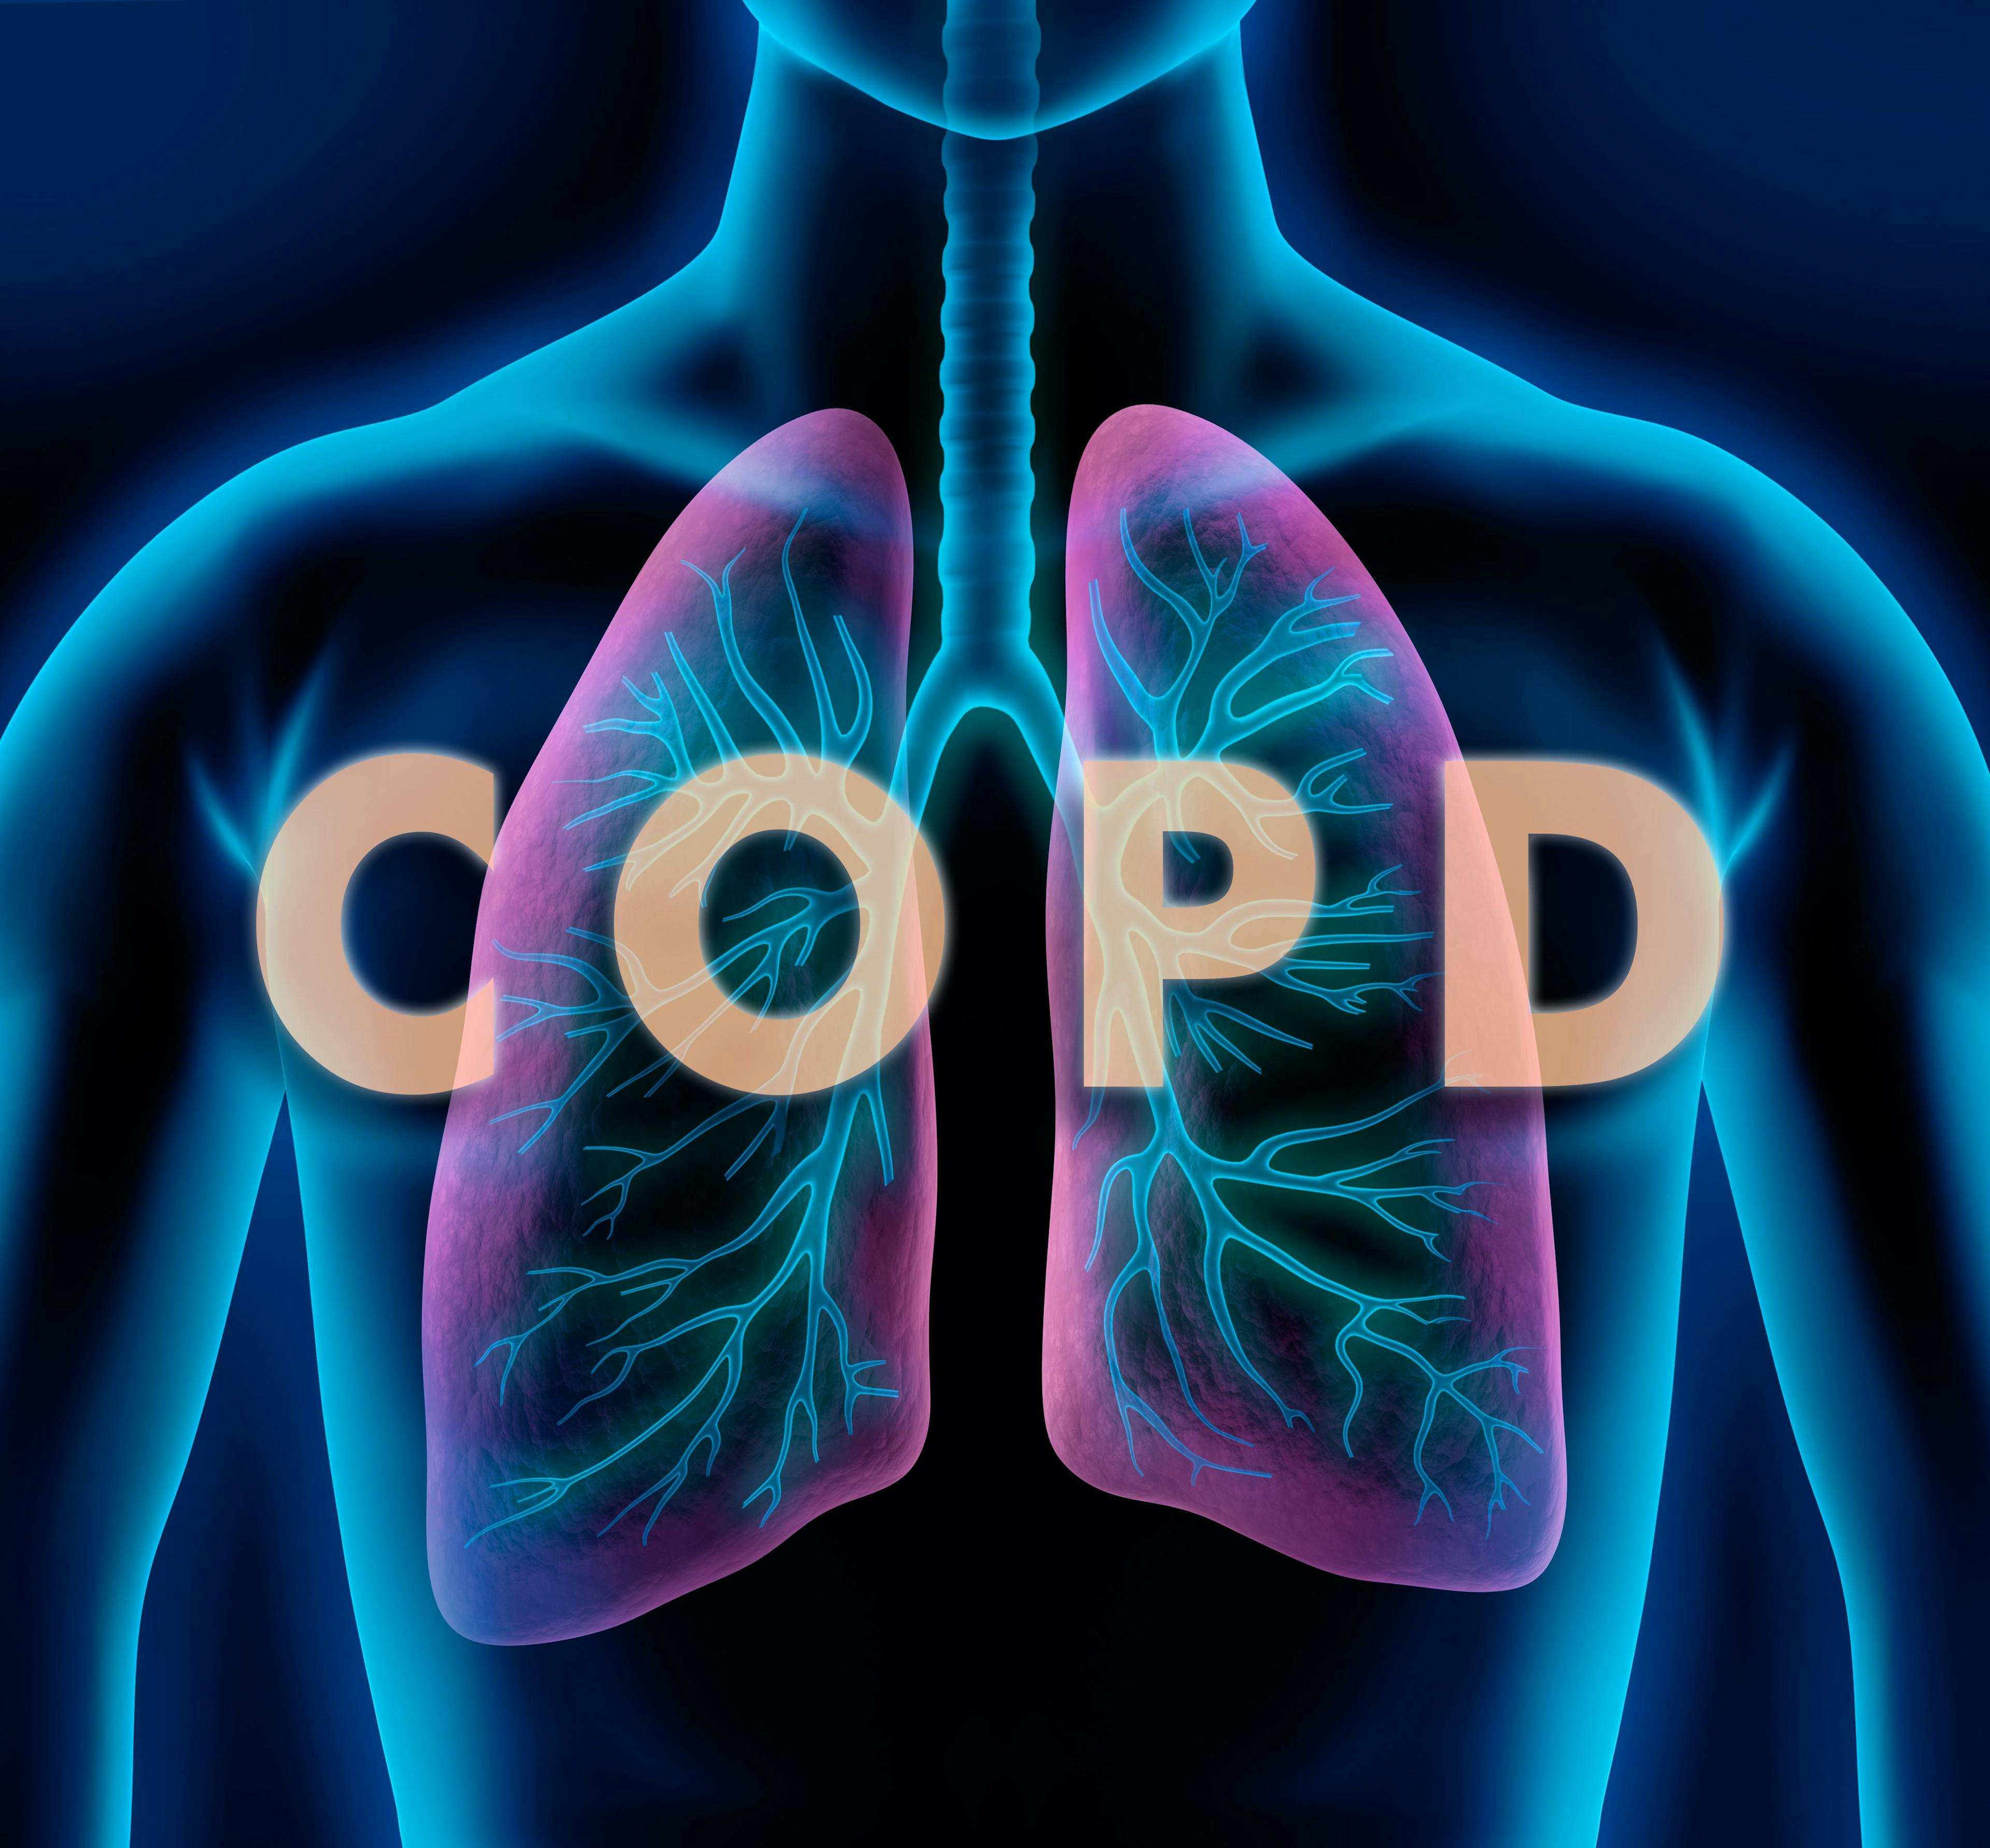 Image credit: peterschreiber.media | stock.adobe.com. Motiv COPD - Lunge und Bronchien